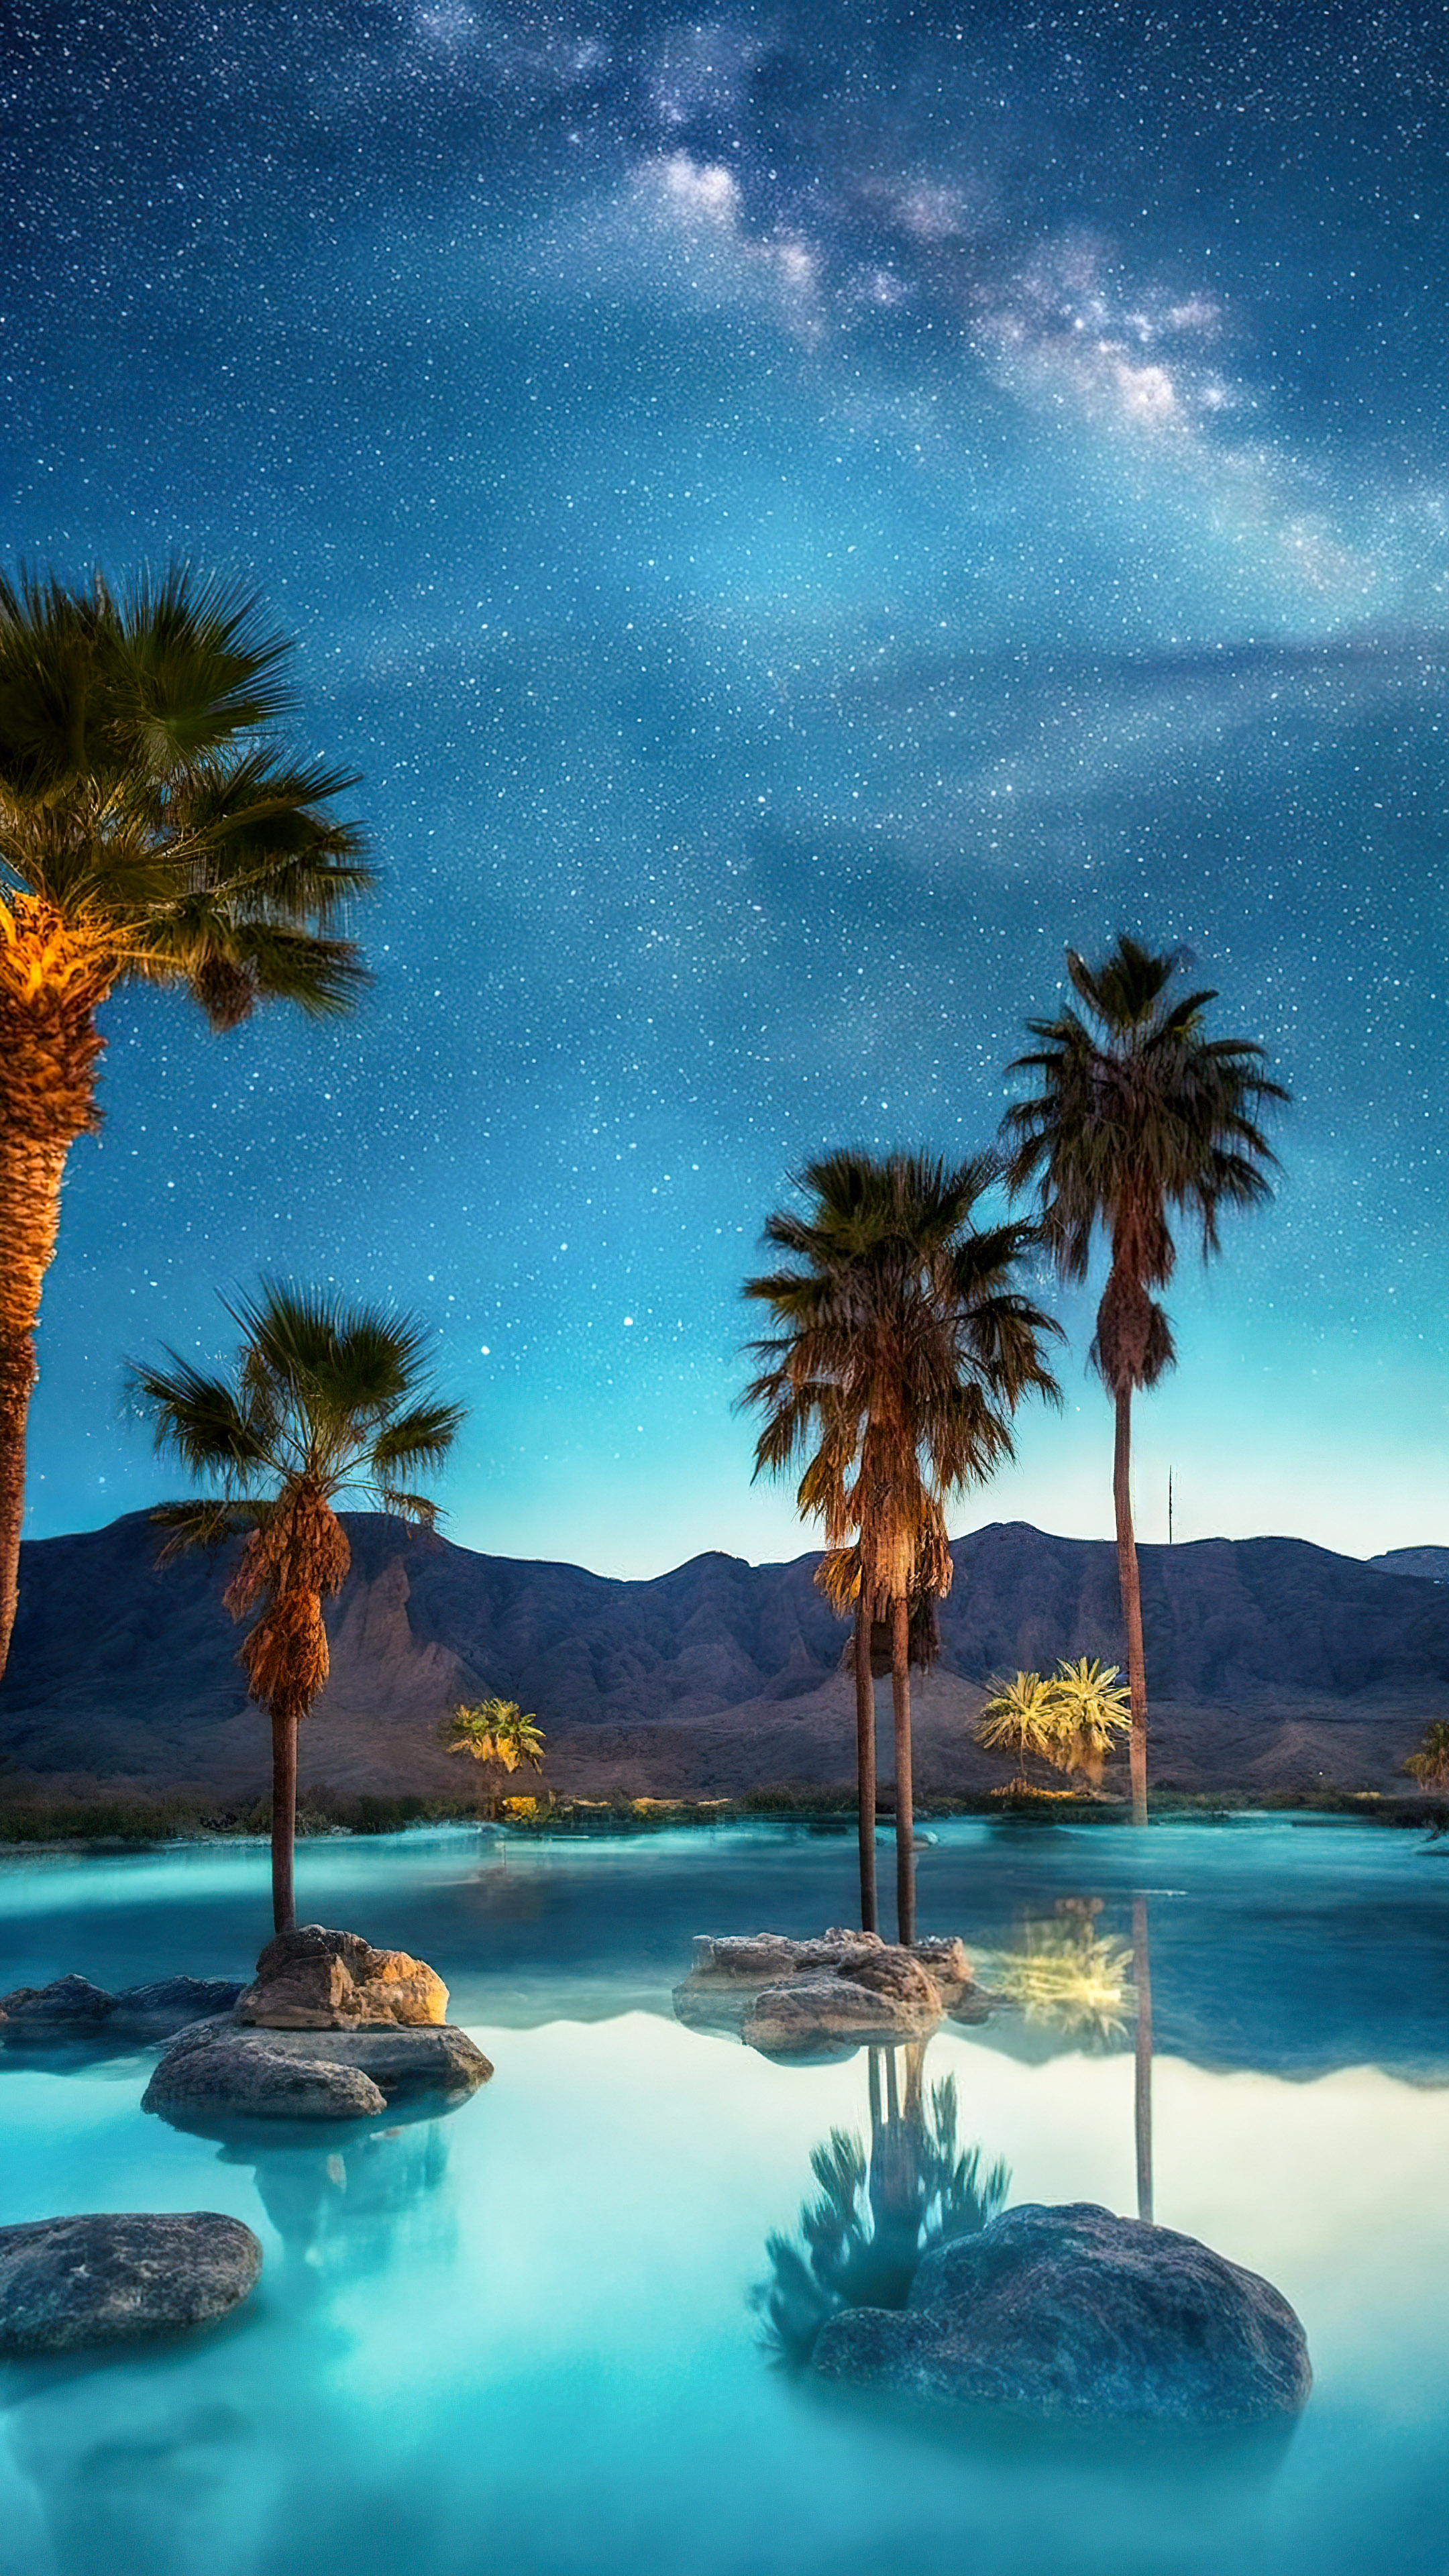 Transformez l'écran de votre appareil mobile avec notre fond d'écran de nuit de plage, où des palmiers entourent une piscine sereine et étoilée. 